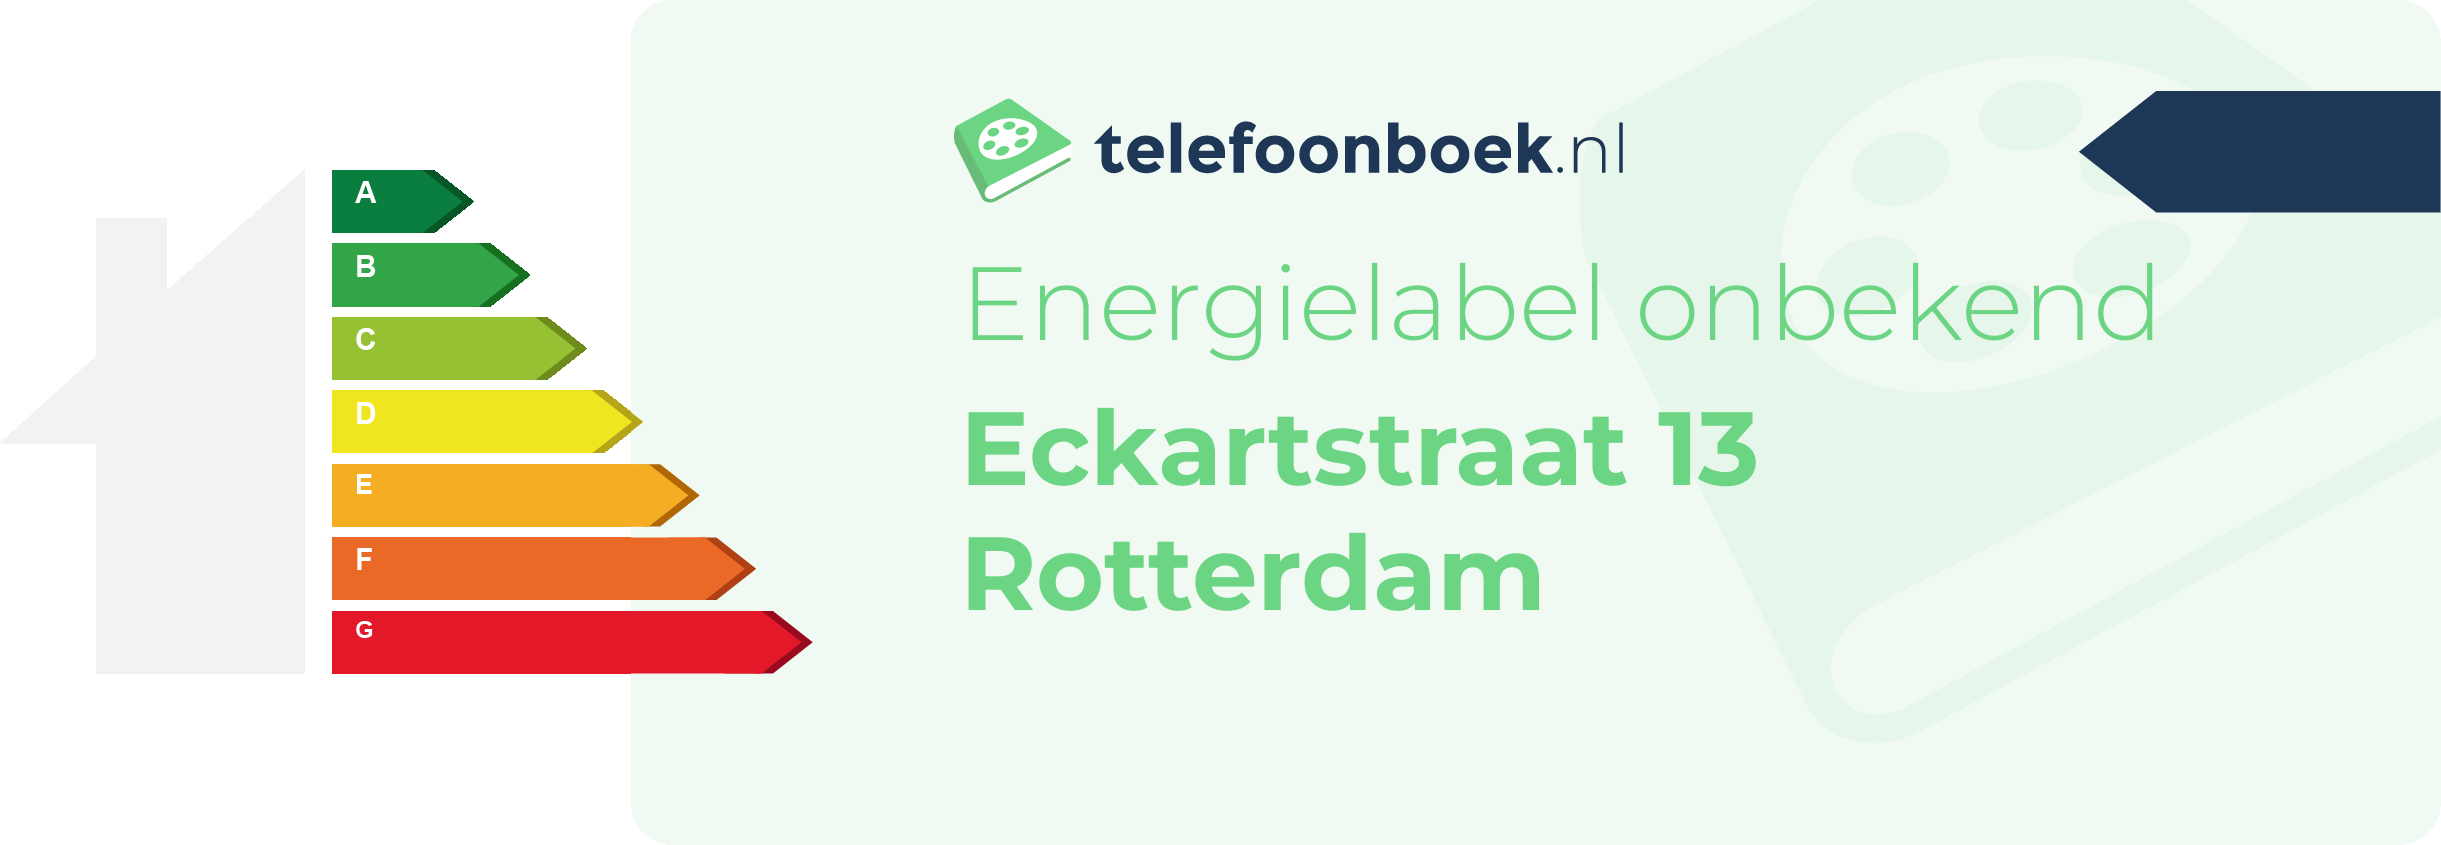 Energielabel Eckartstraat 13 Rotterdam